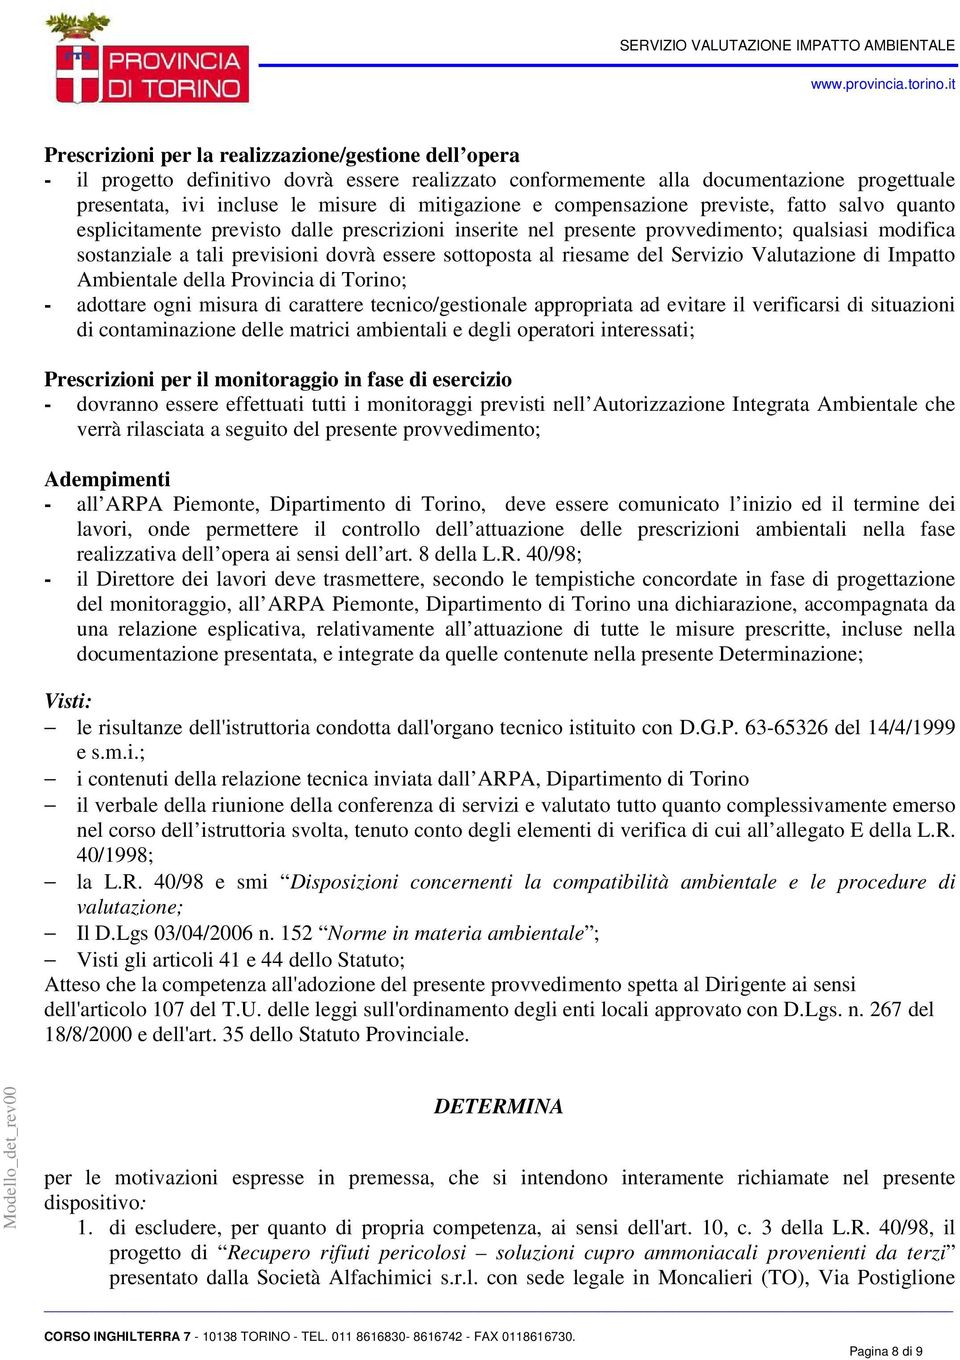 riesame del Servizio Valutazione di Impatto Ambientale della Provincia di Torino; - adottare ogni misura di carattere tecnico/gestionale appropriata ad evitare il verificarsi di situazioni di